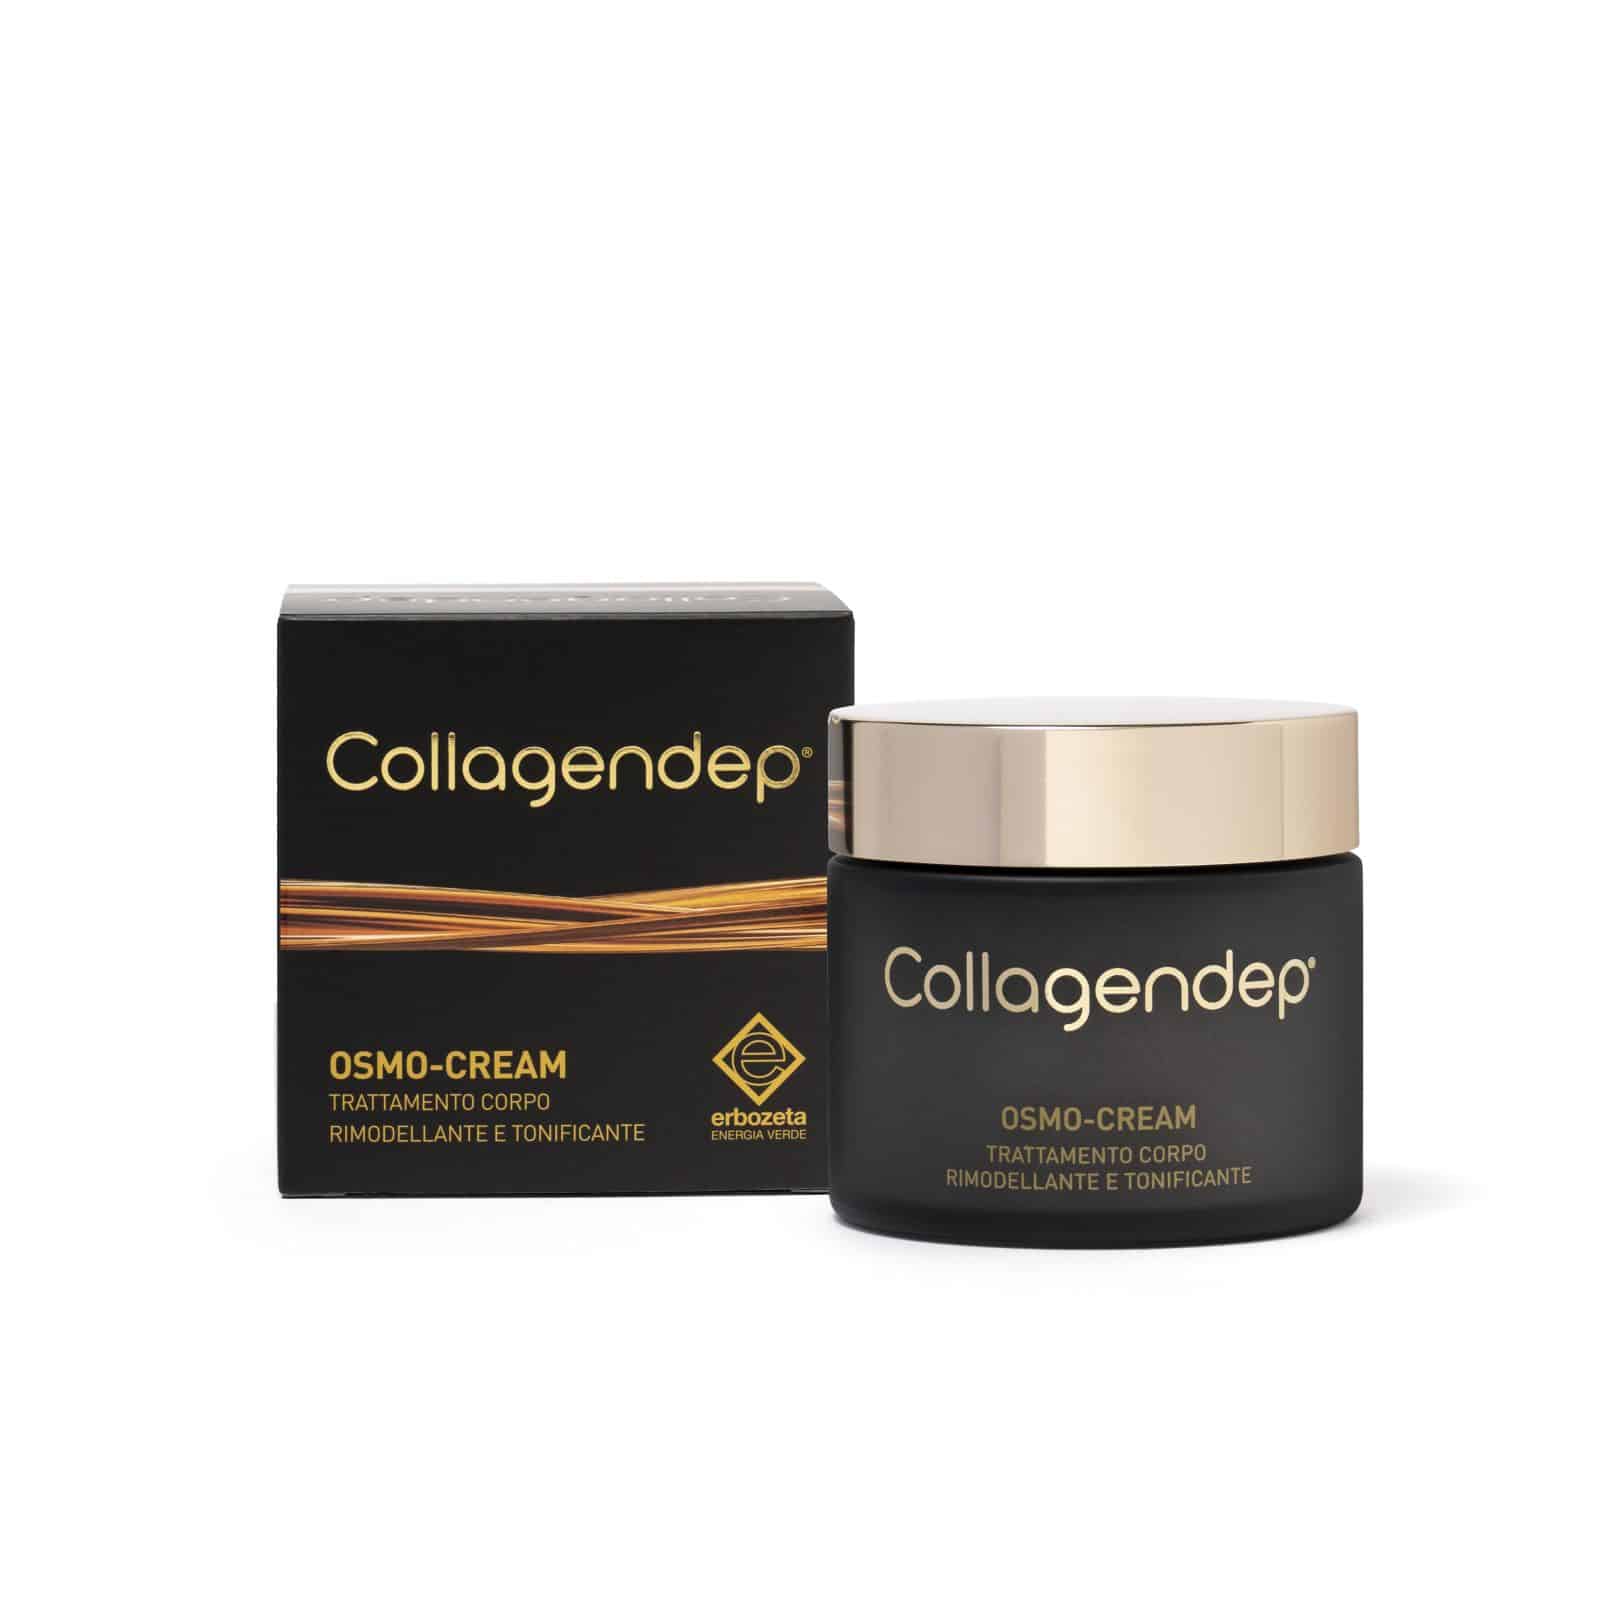 Image of Collagendep(R) Osmo-Cream erbozeta 200ml